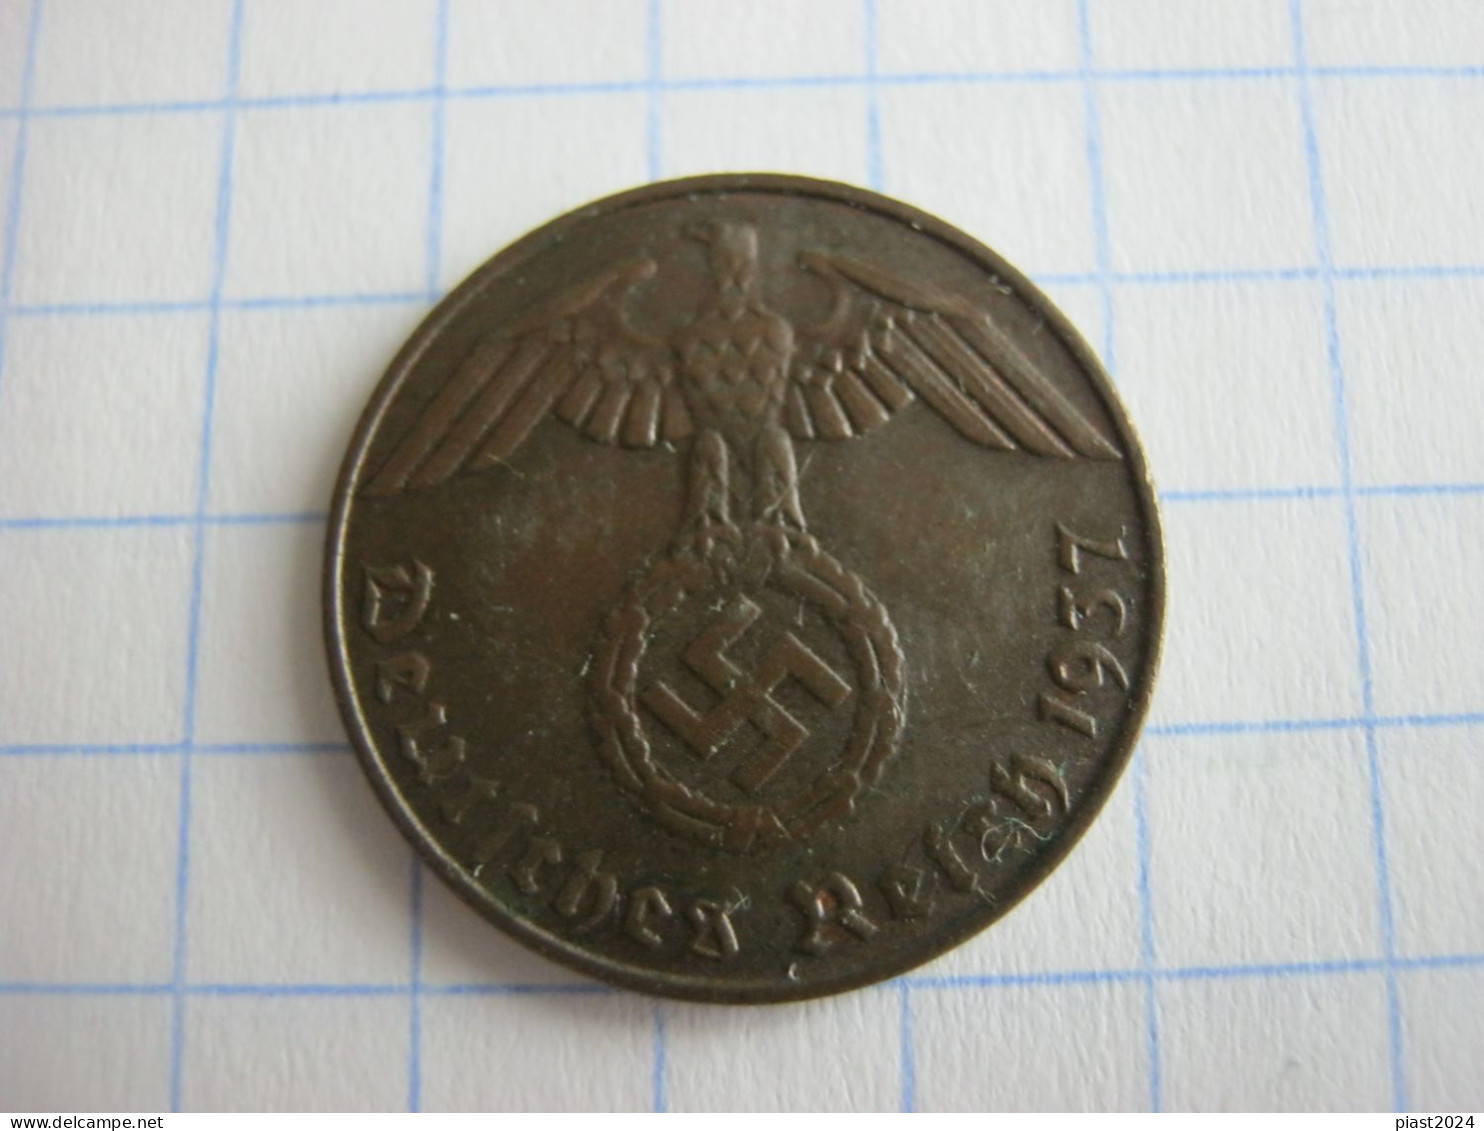 Germany 1 Reichspfennig 1937 D - 1 Reichspfennig